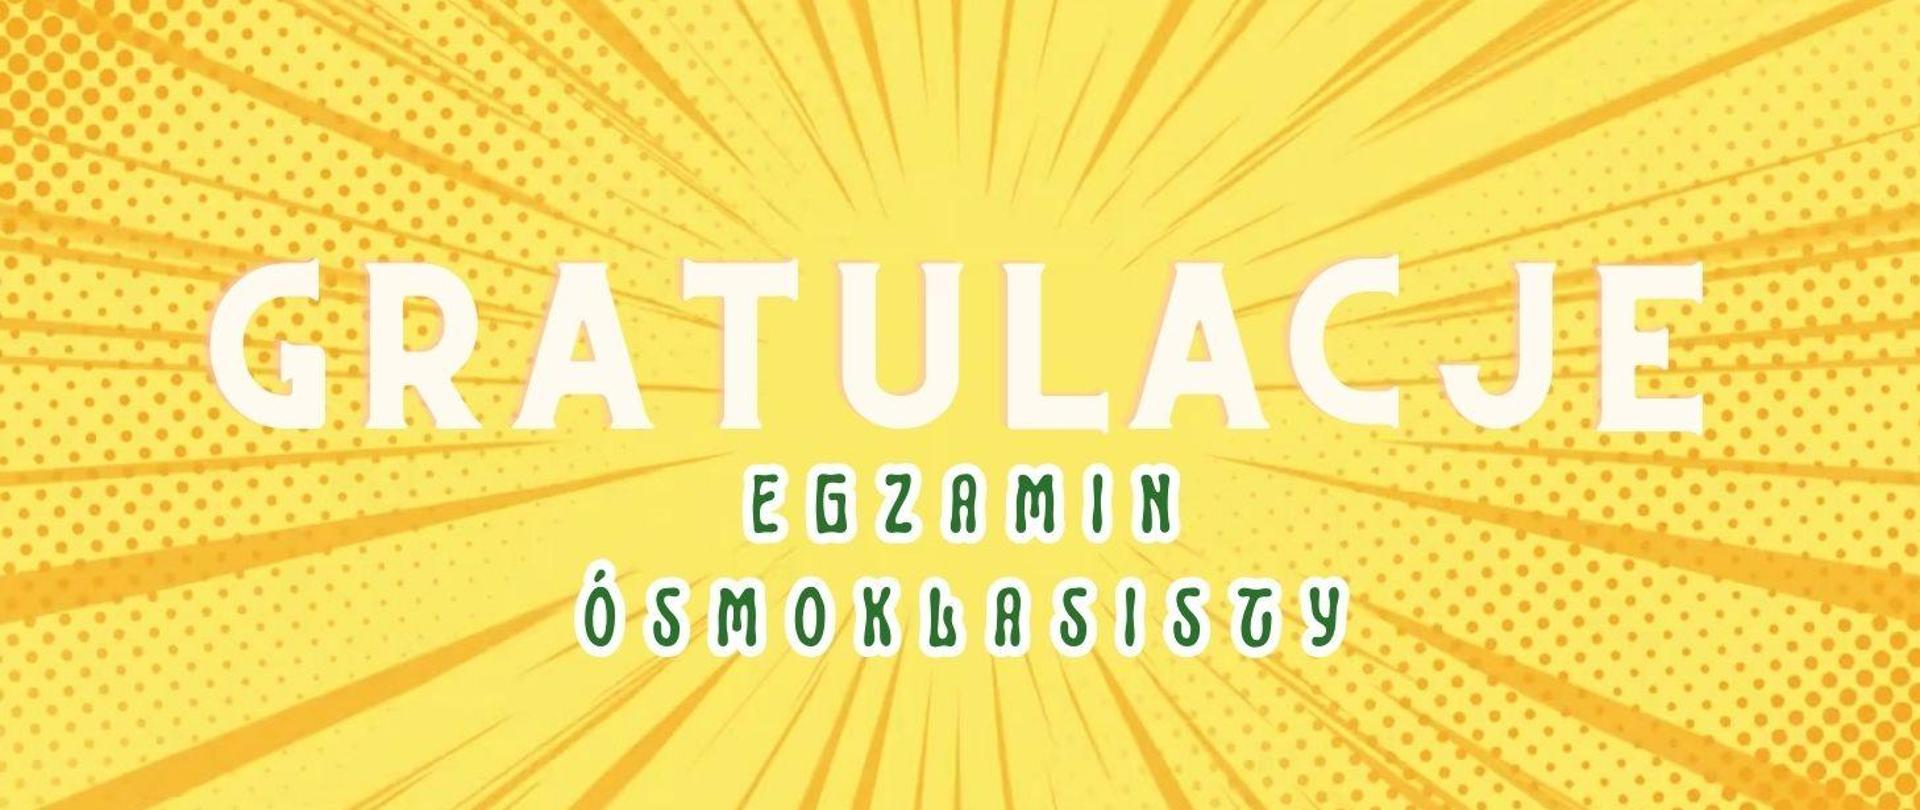 Plakat z napisem 'gratulacje' egzamin ósmoklasisty. Żółte tło, białe i czarne litery.